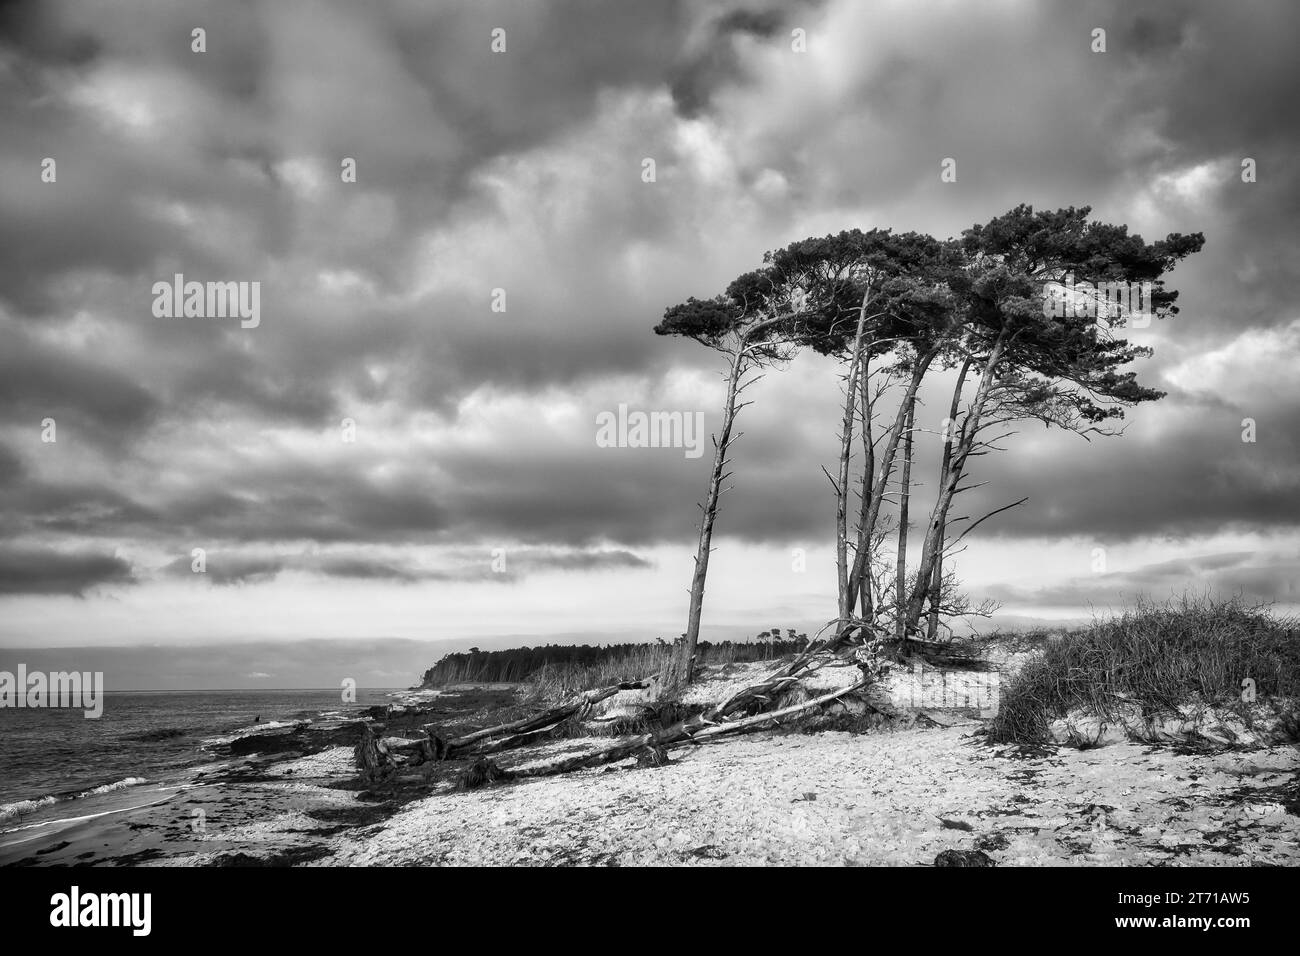 Spiaggia occidentale sul Mar Baltico in bianco e nero. Dal vento, i pini pendenti alla spiaggia attraversano le dune. Vista sul mare. Foto paesaggio Foto Stock